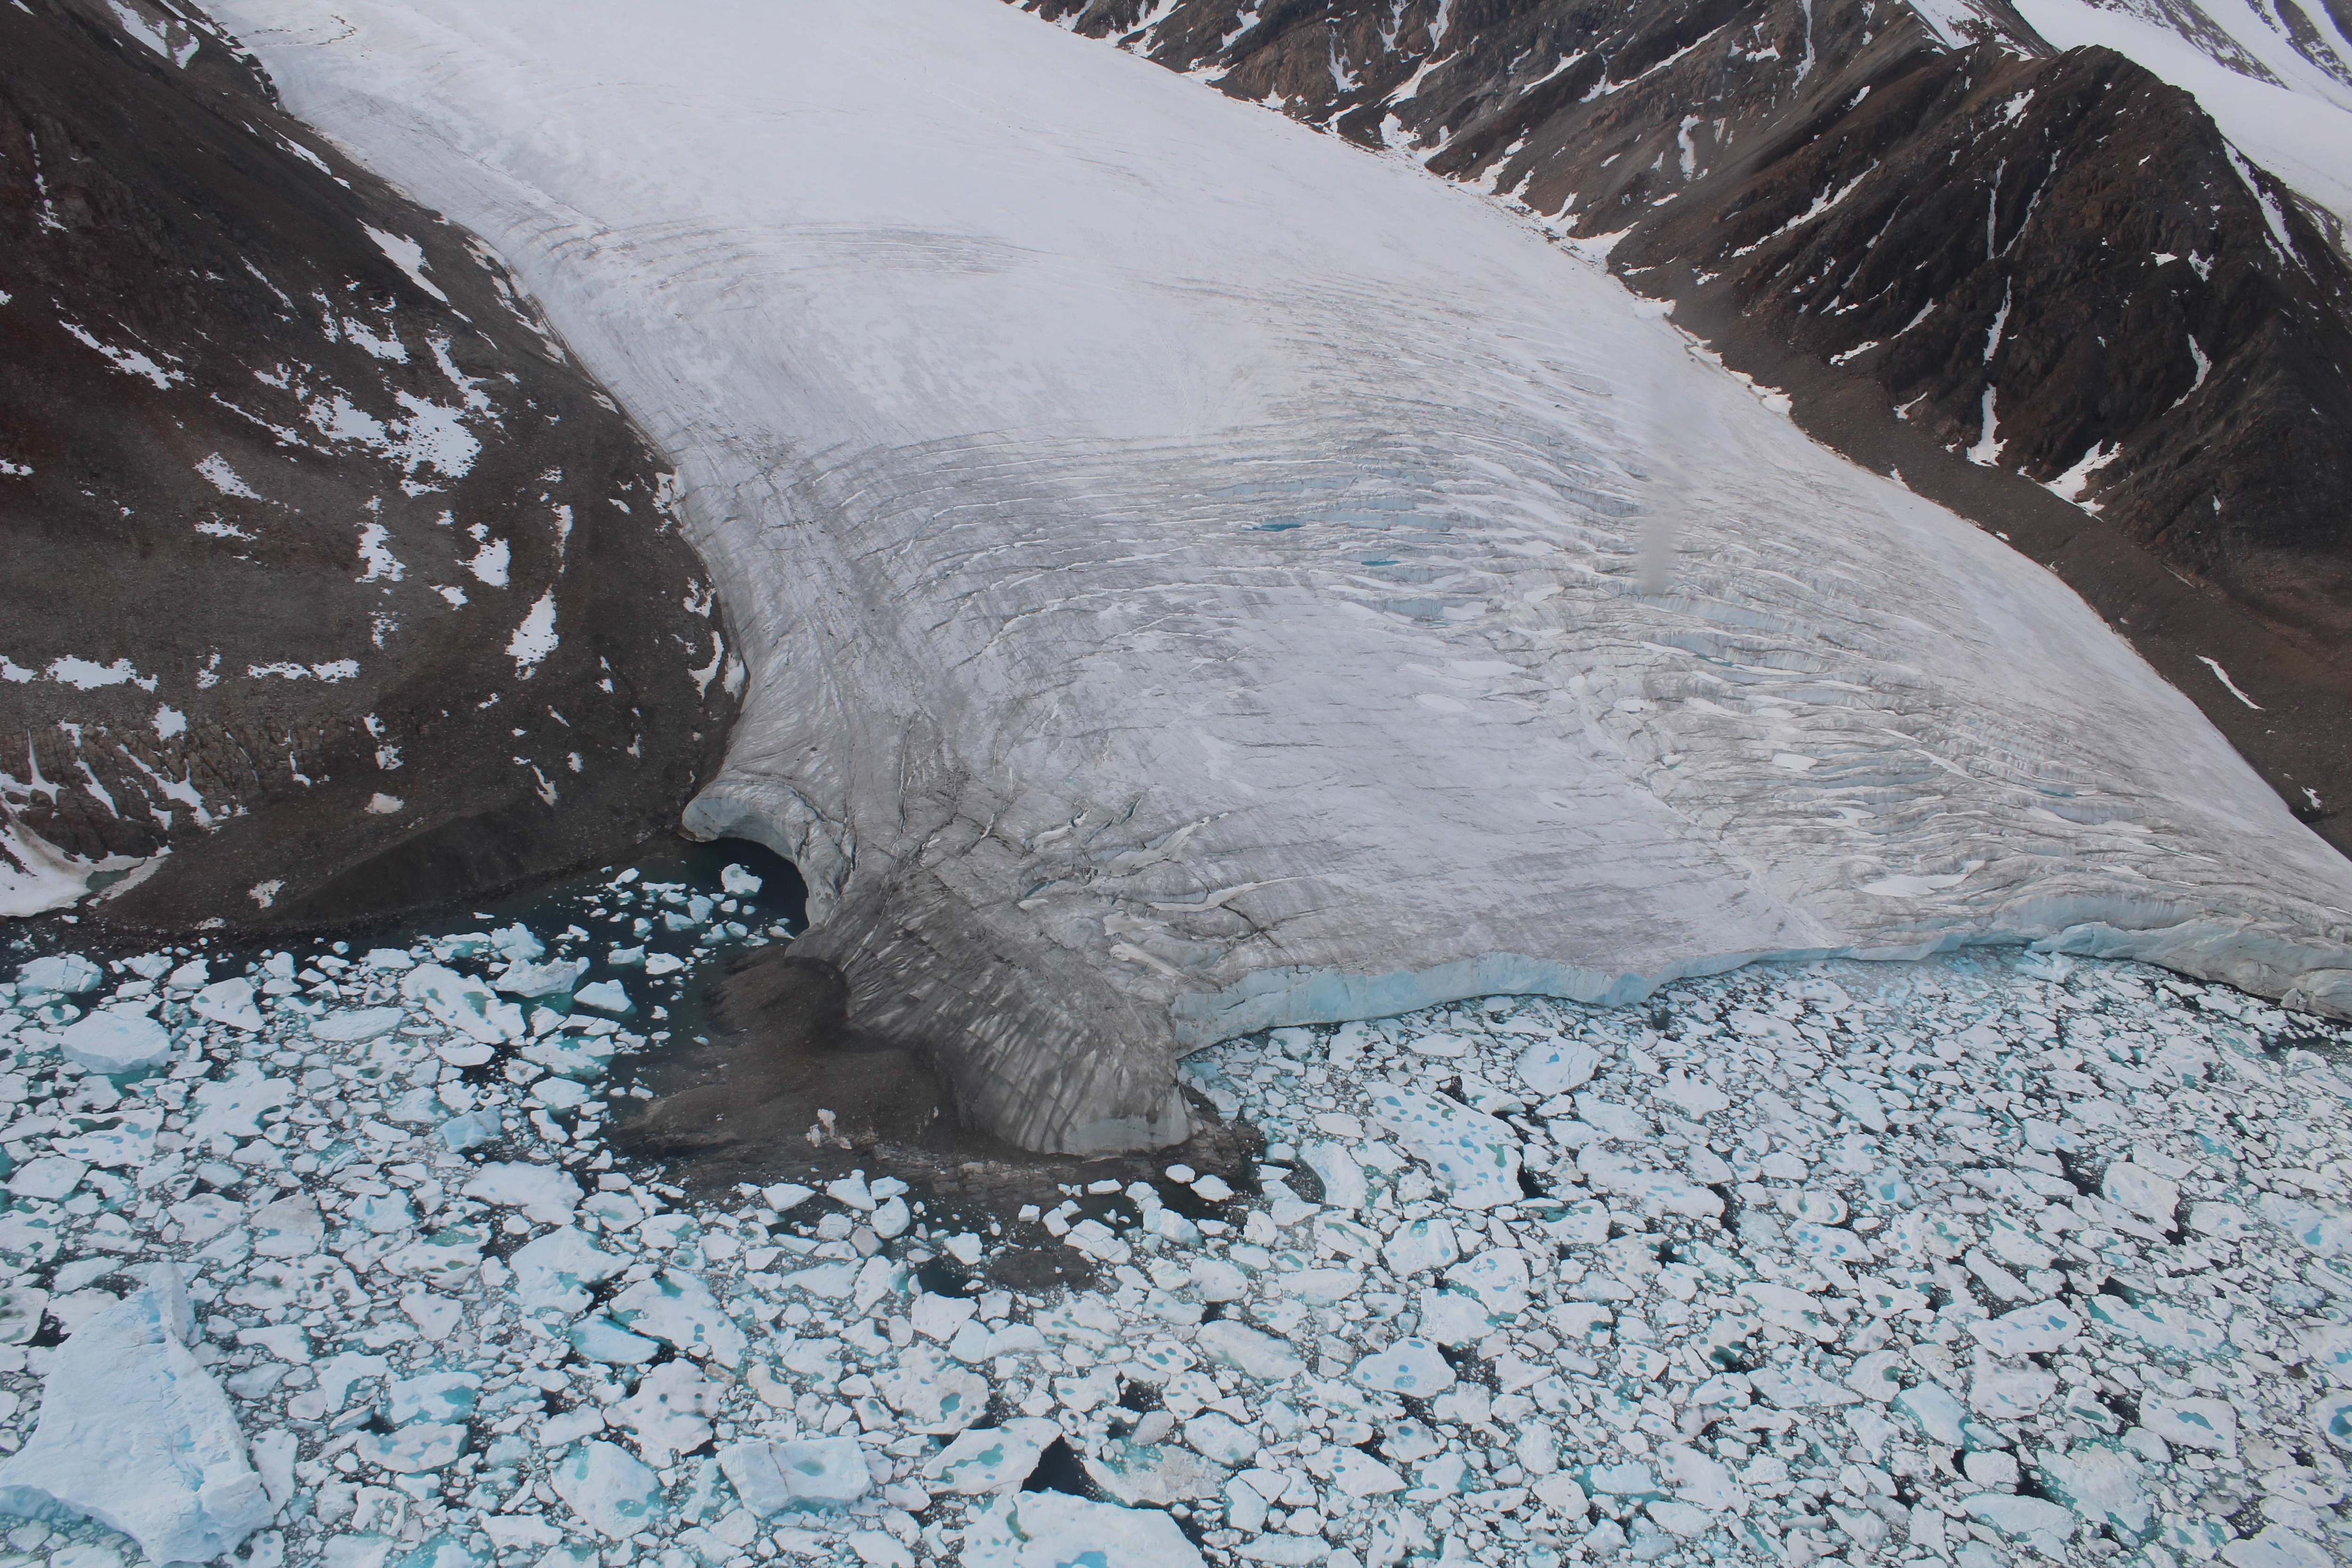 Les glaciers de l'Arctique canadien ont rétréci depuis 1960 selon les données de l'ISMER.